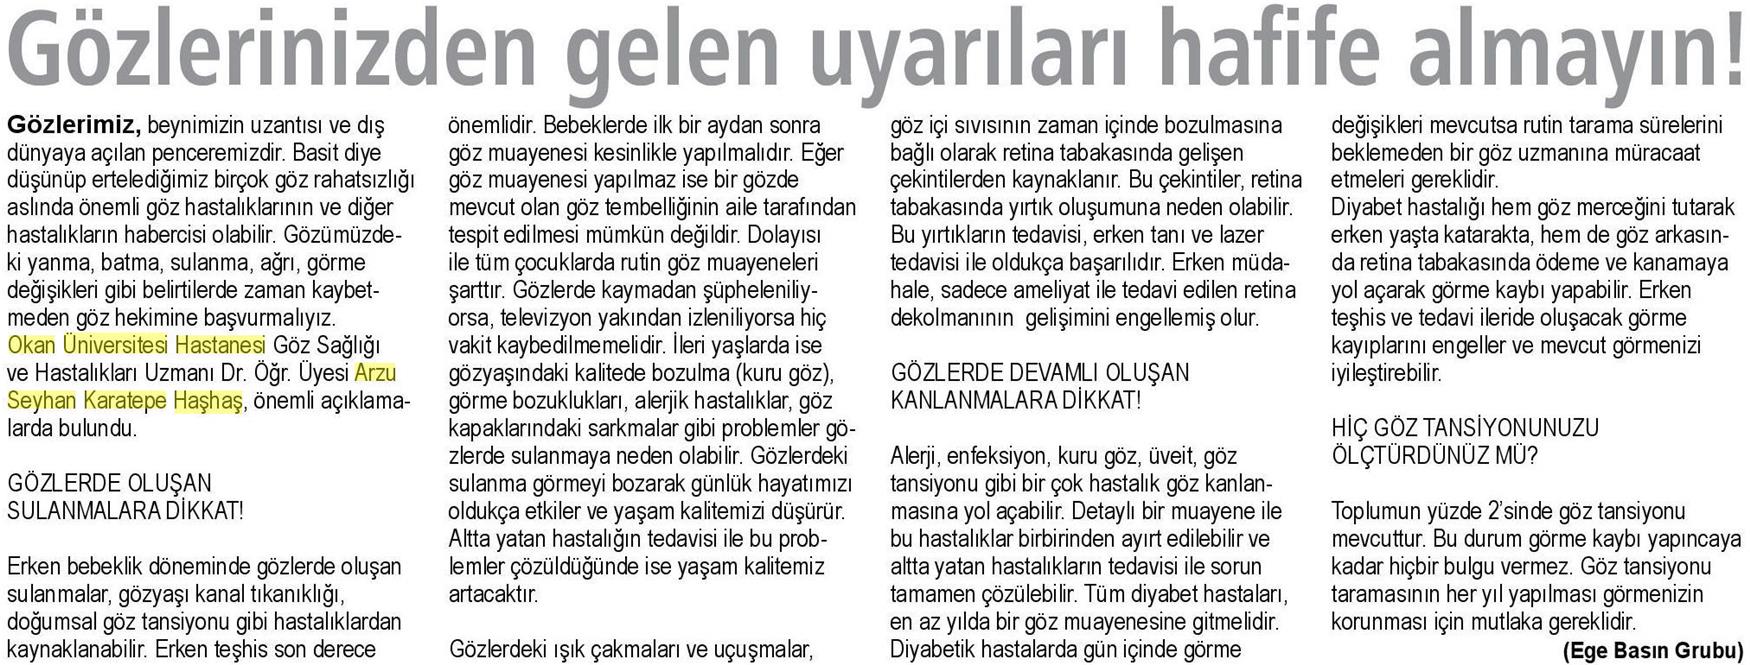 29.04.2019 Sağlık Gazetesi GÖZLERİNİZDEN GELEN UYARILARI HAFİFE ALMAYIN!